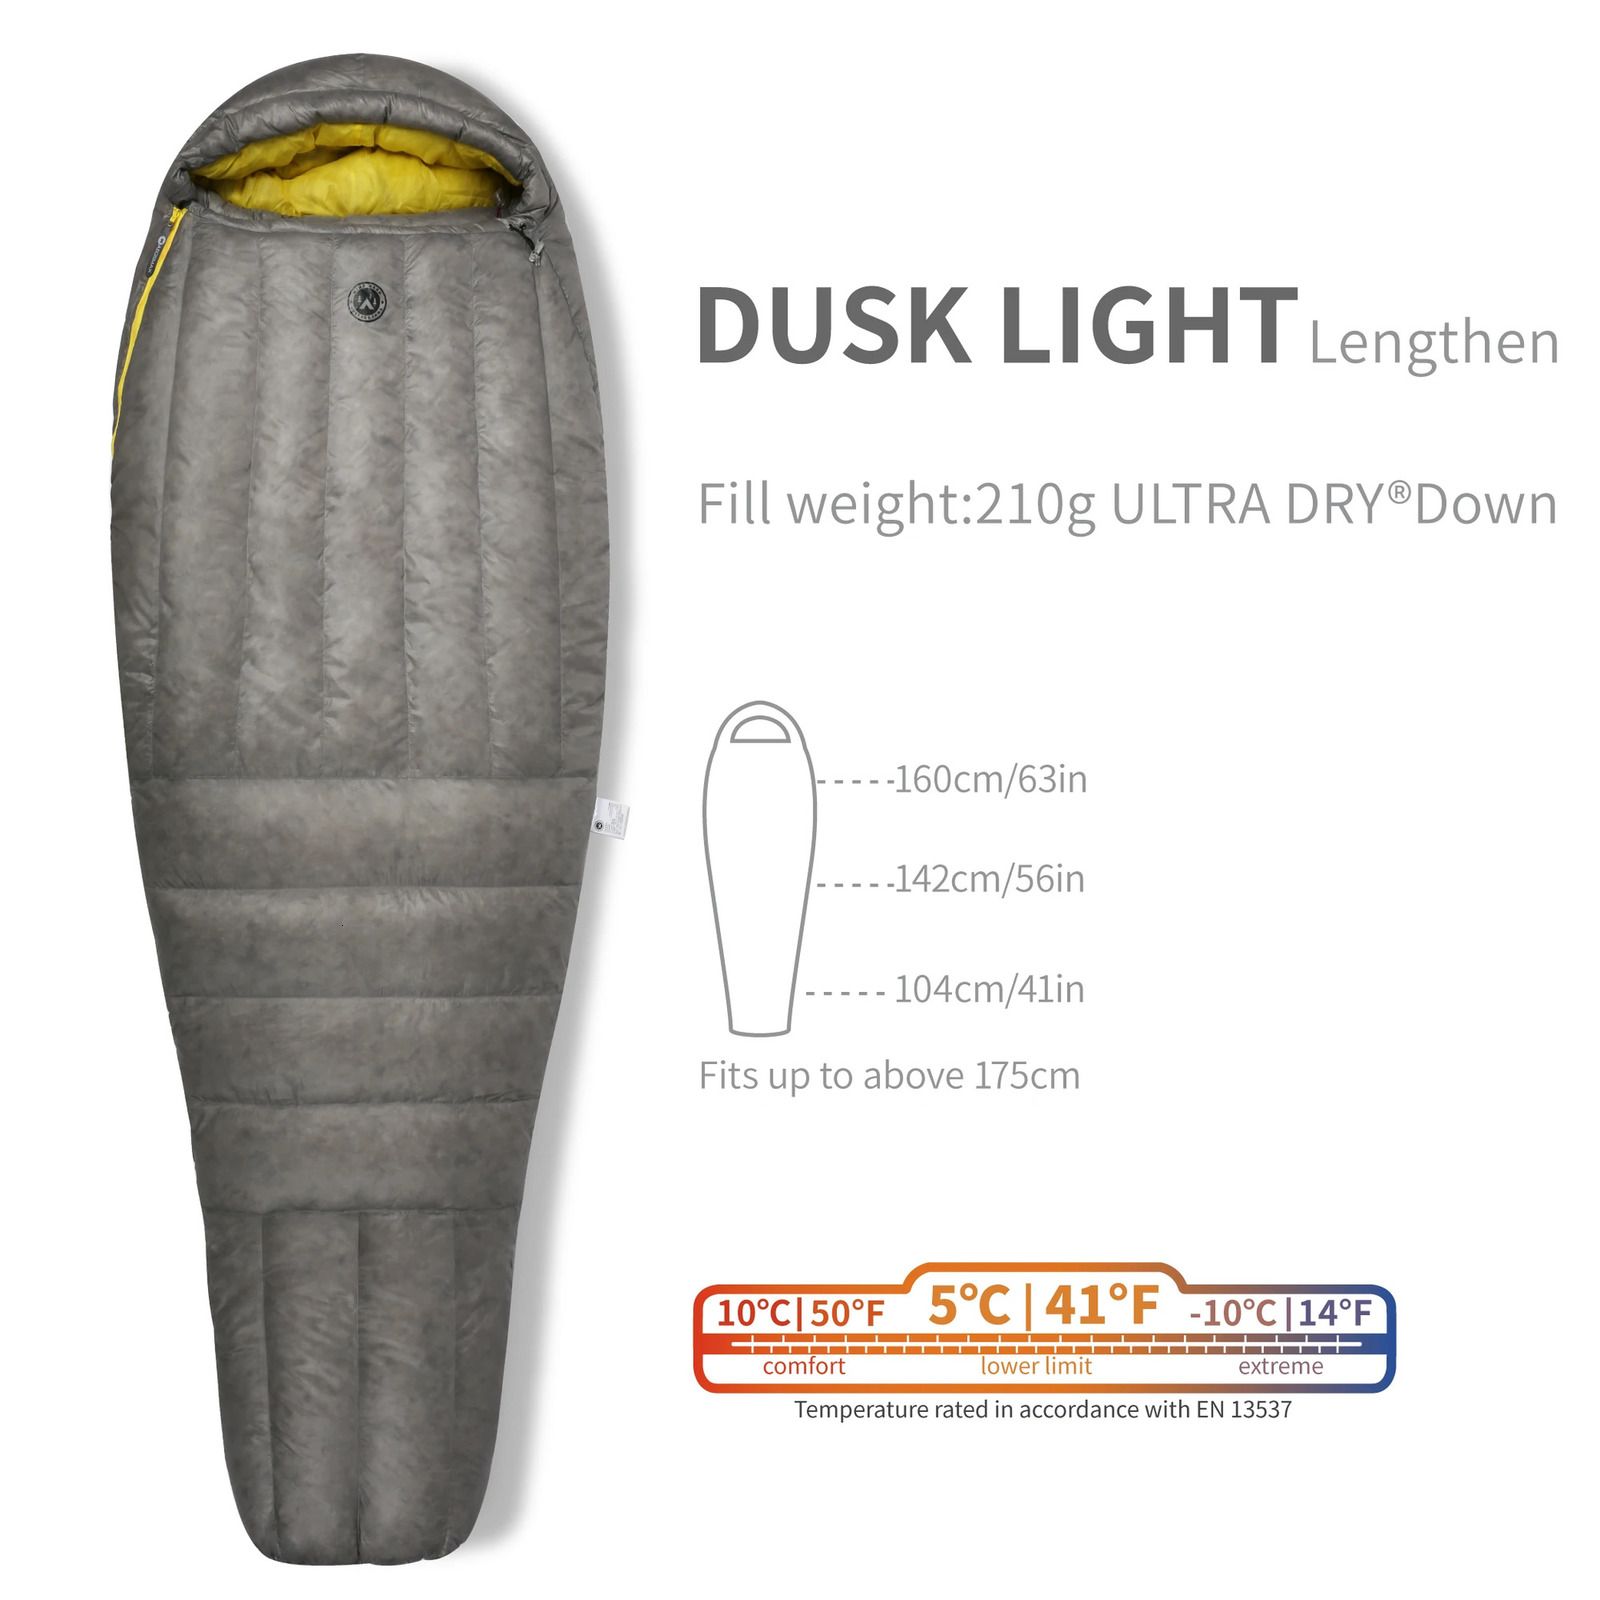 Dusk Light-lengthen